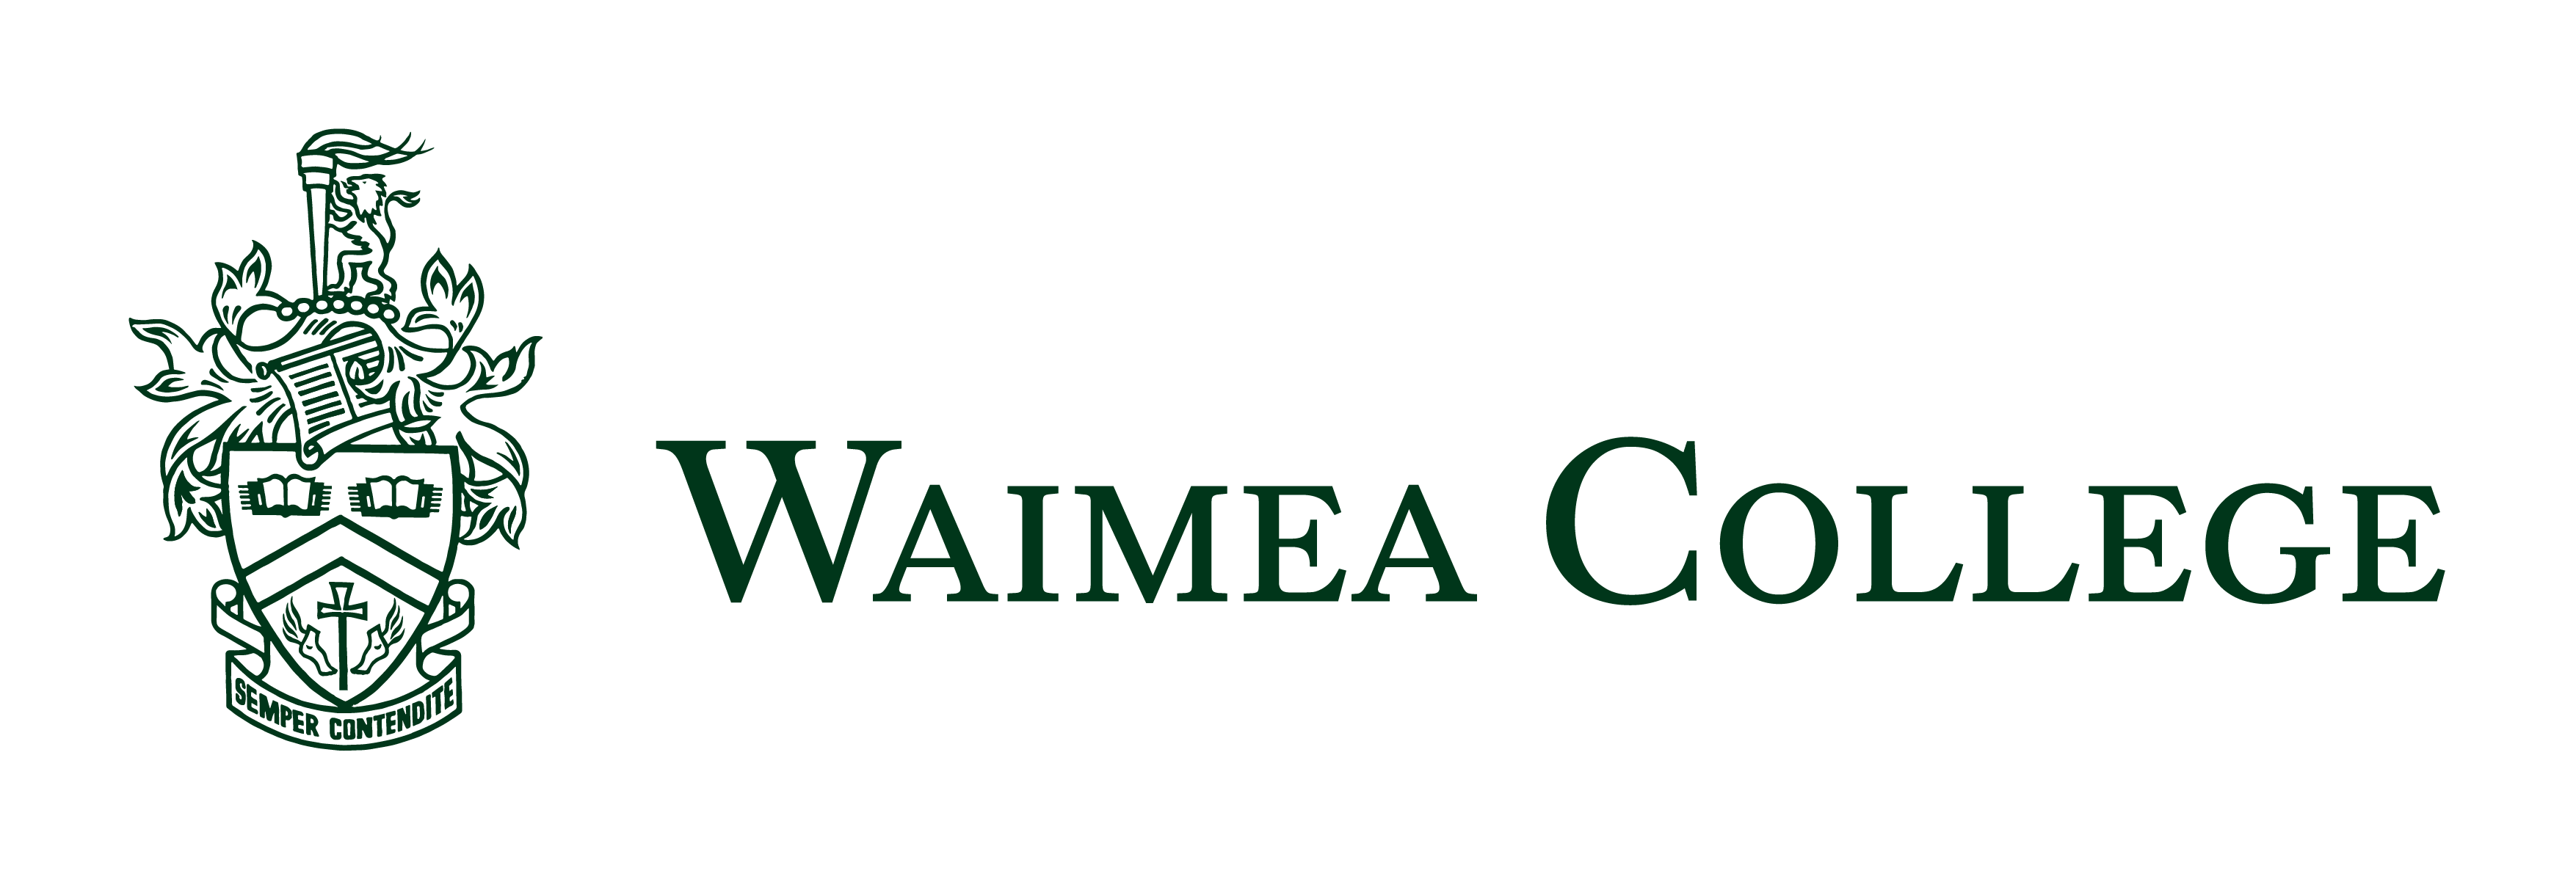 Waimea College logo